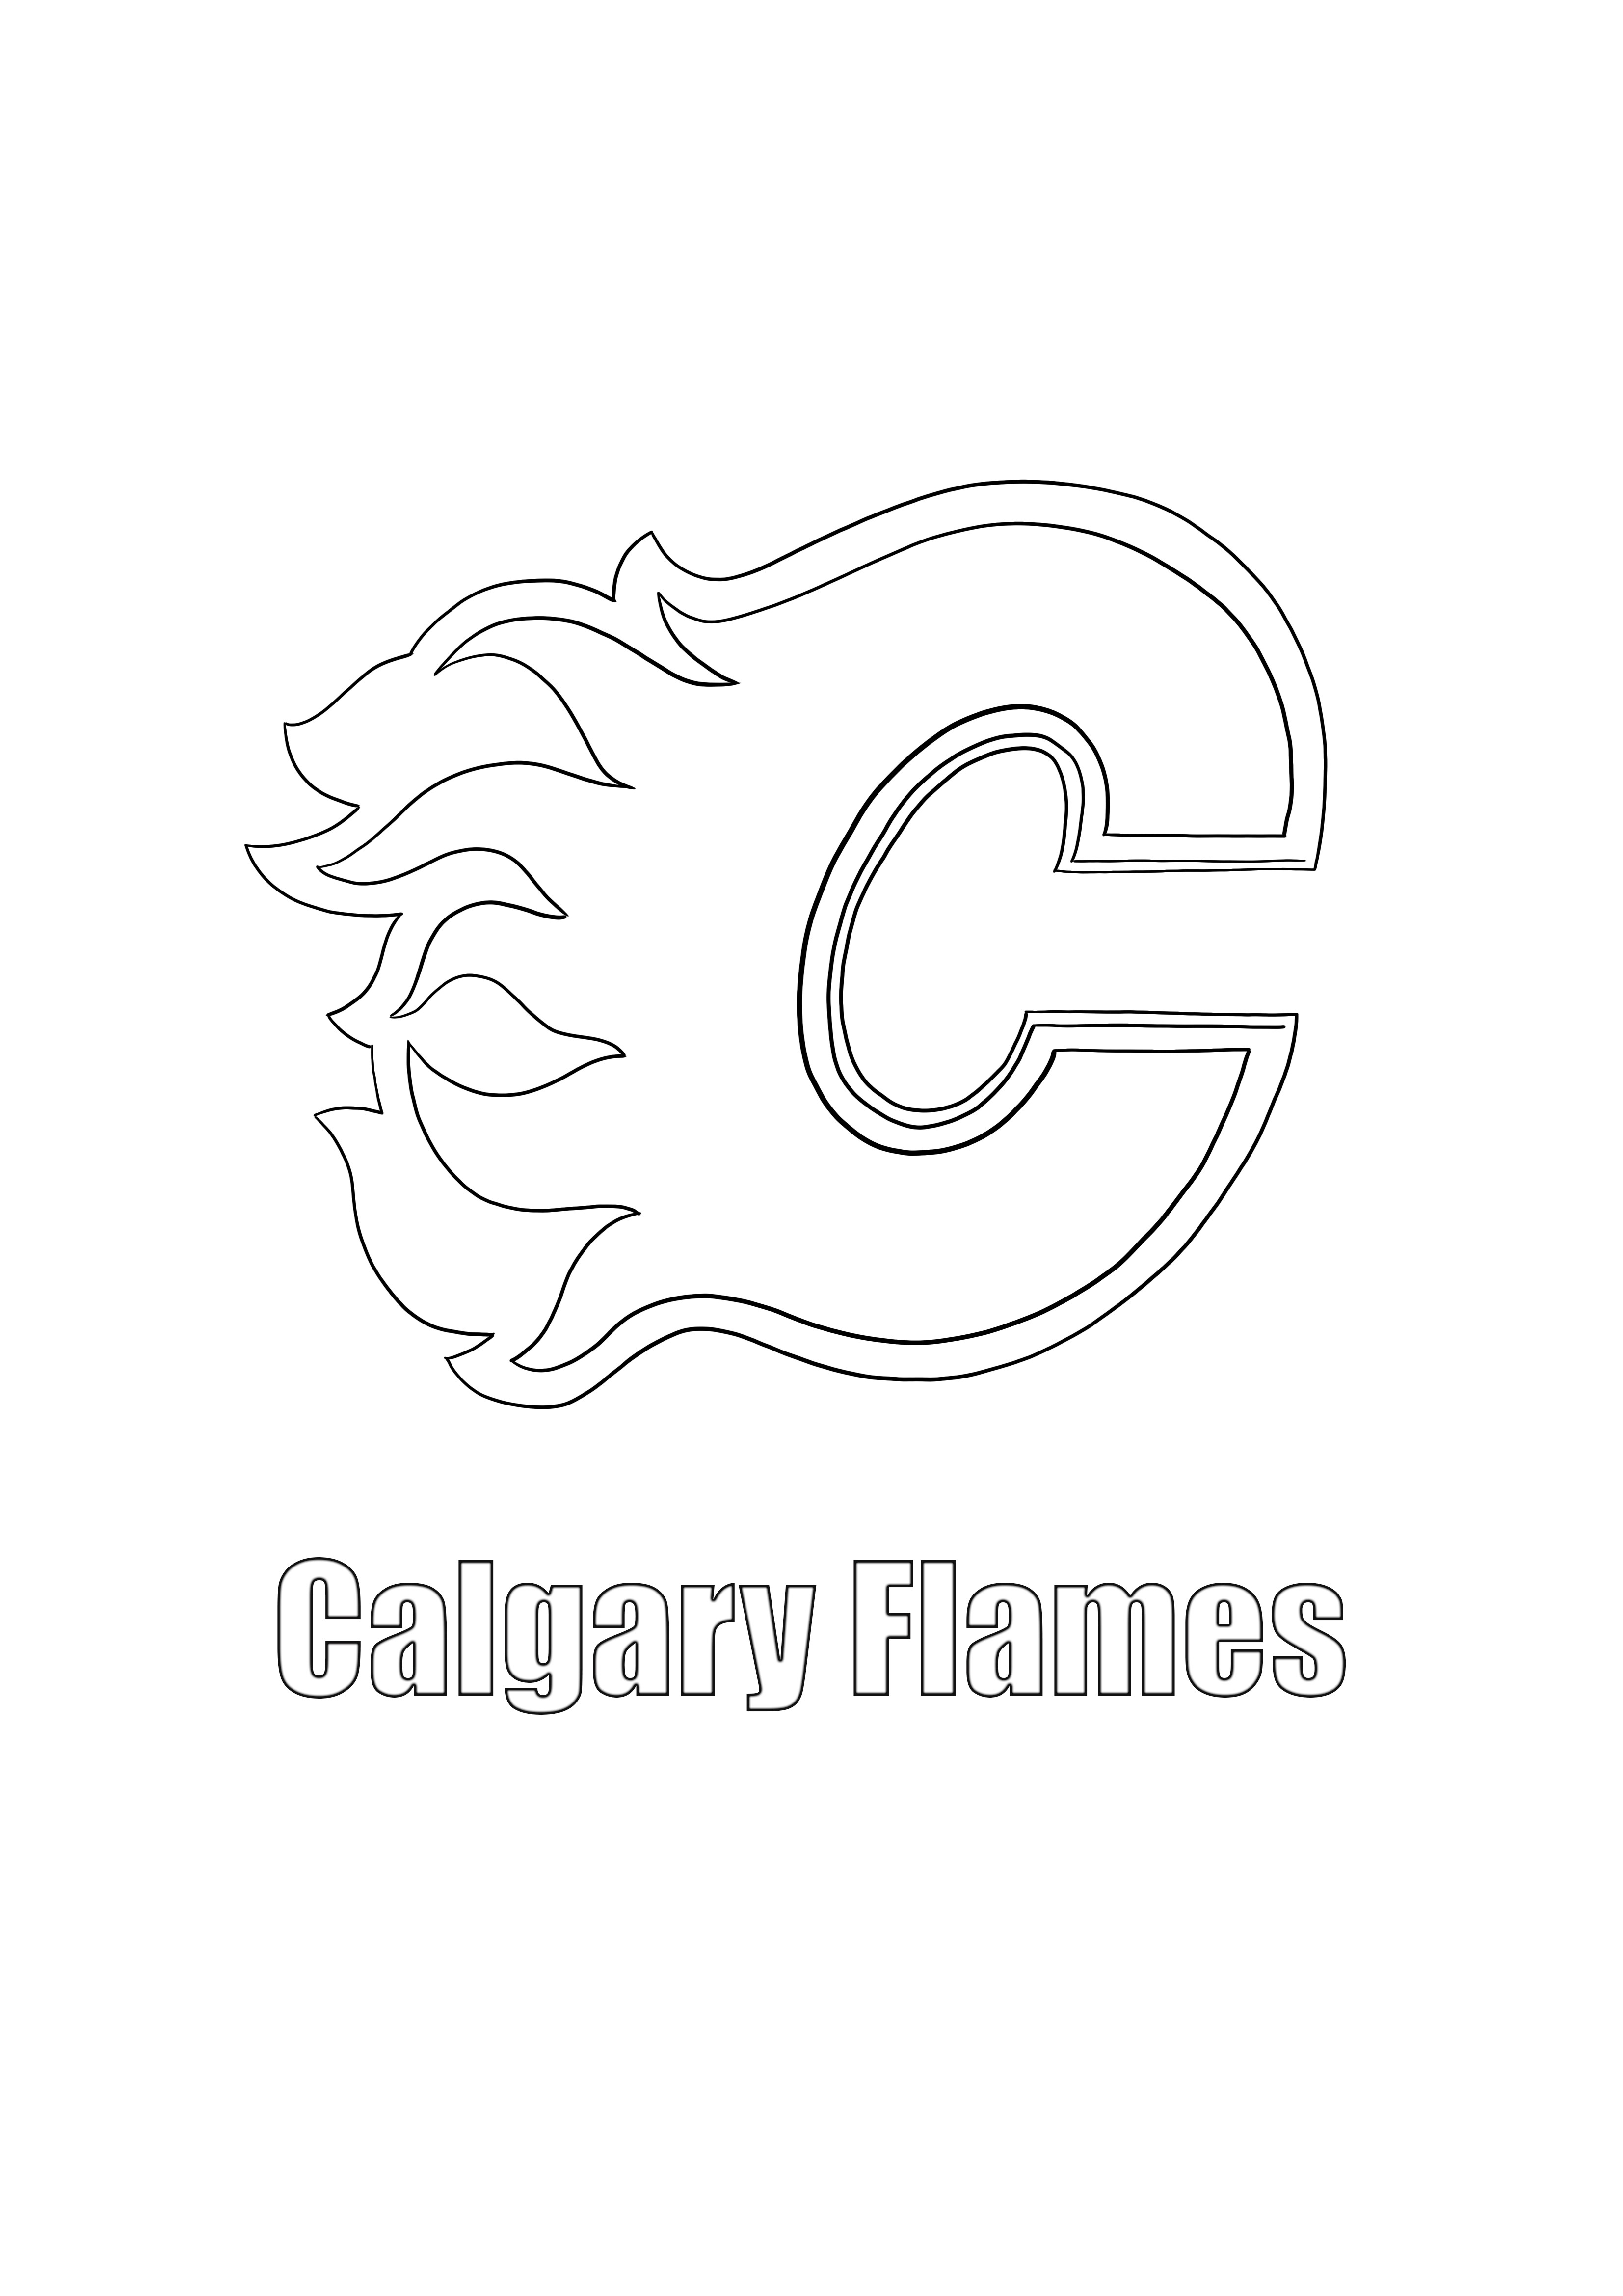 Calgary Flames-Logo zum kostenlosen Ausdrucken und Ausmalen